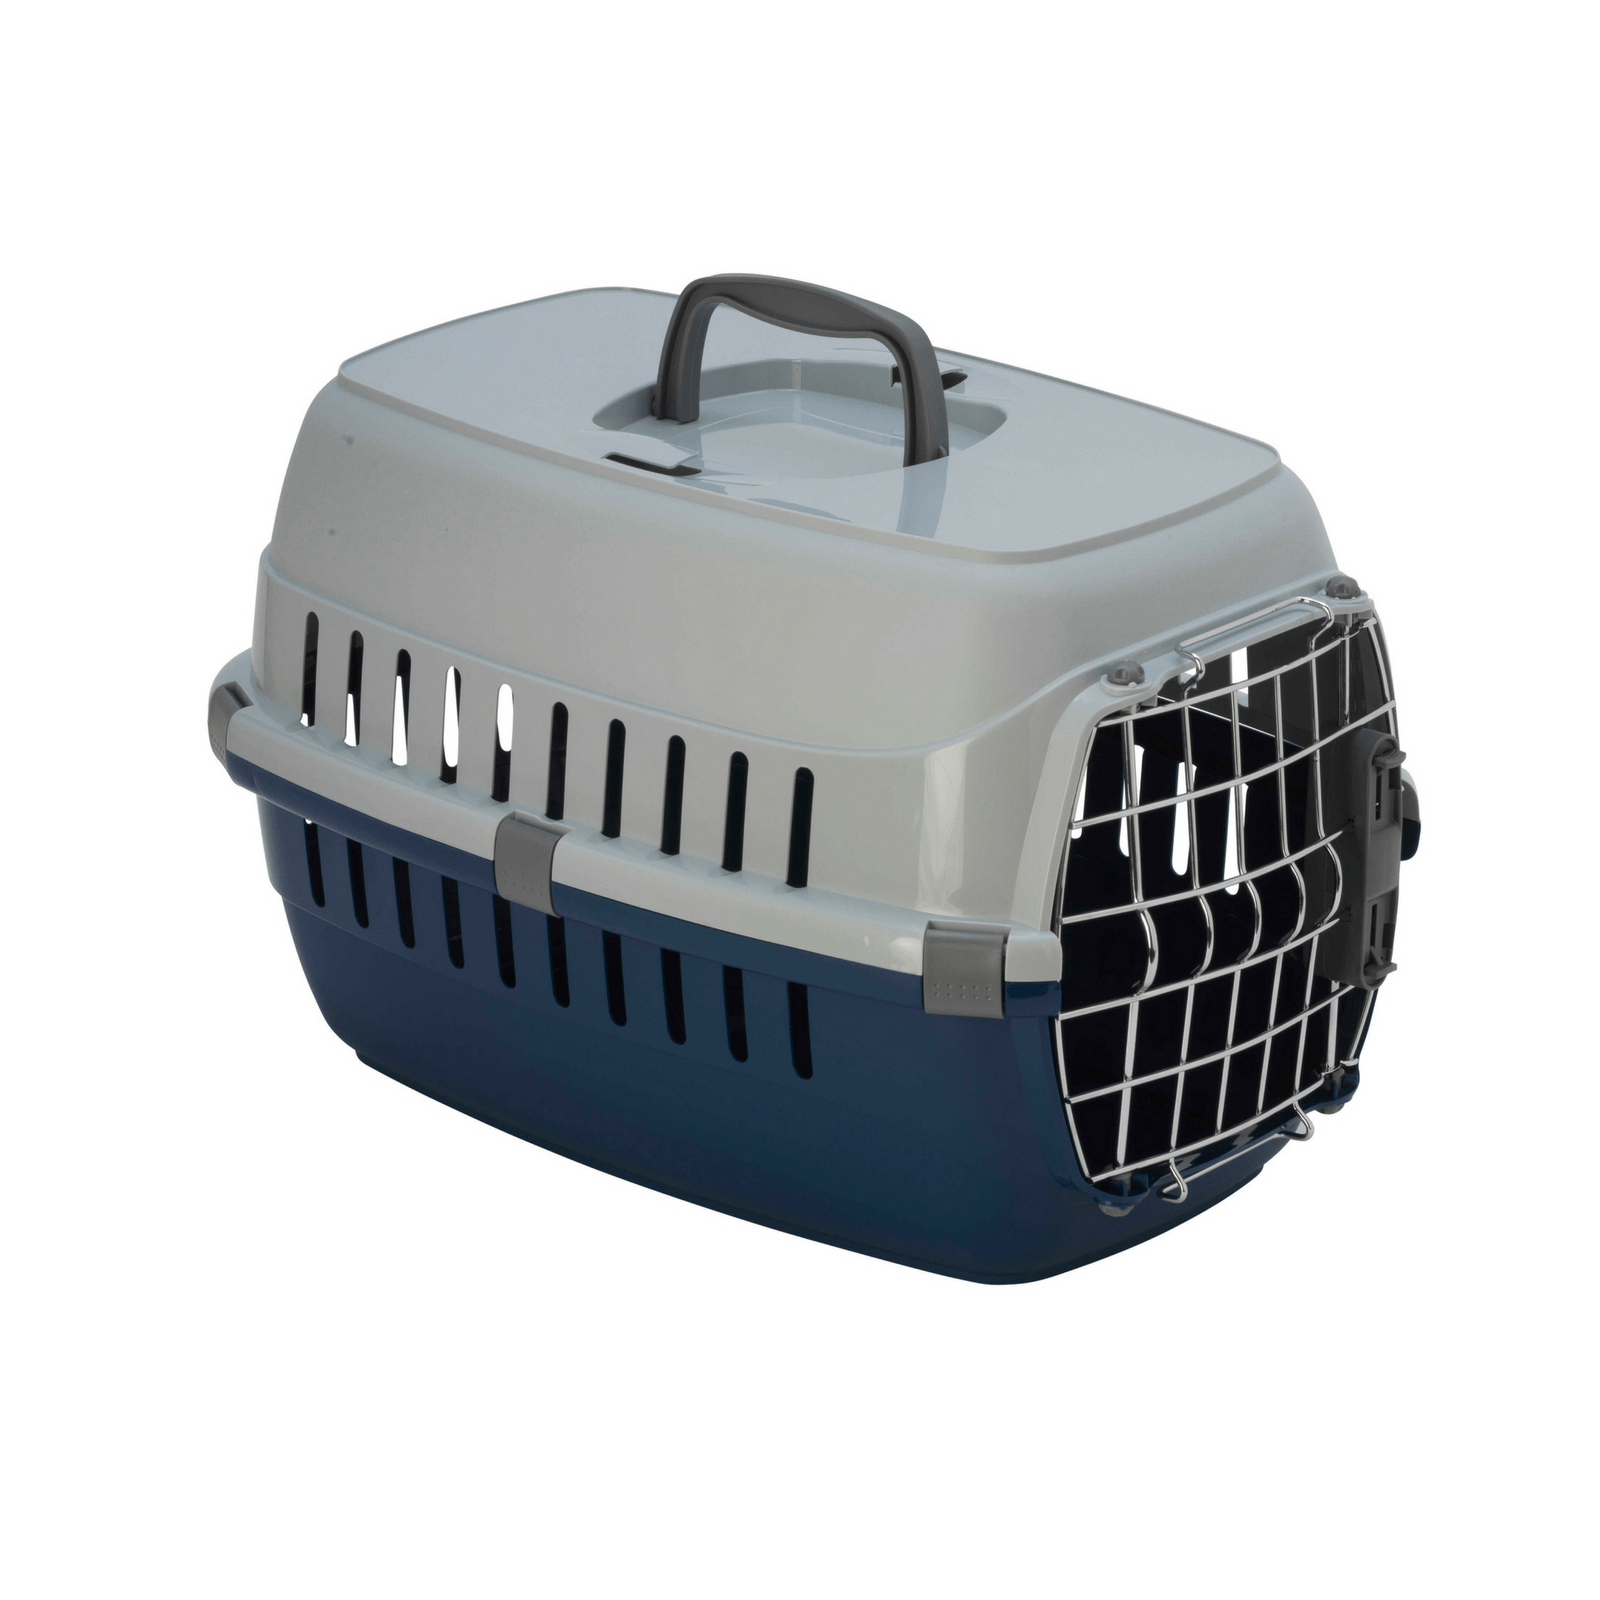 plastic cat carrier